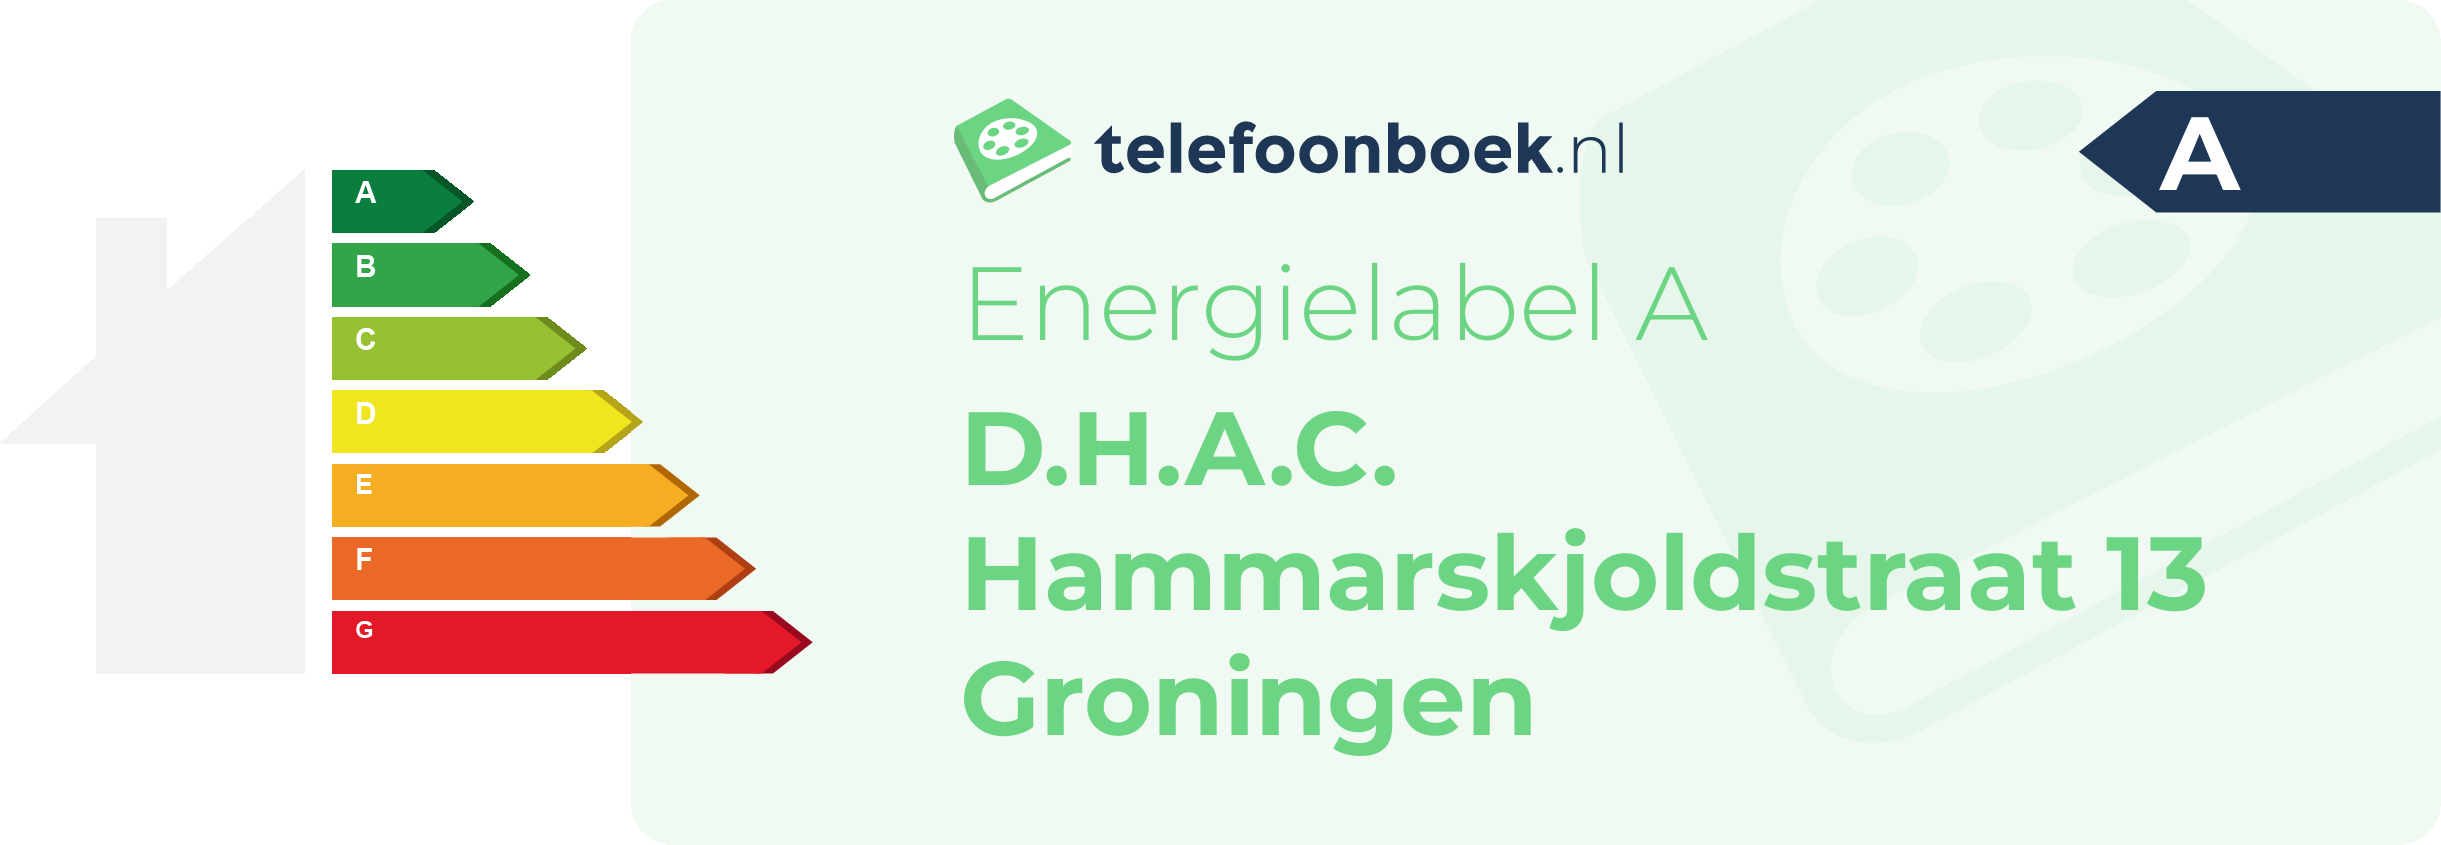 Energielabel D.H.A.C. Hammarskjoldstraat 13 Groningen